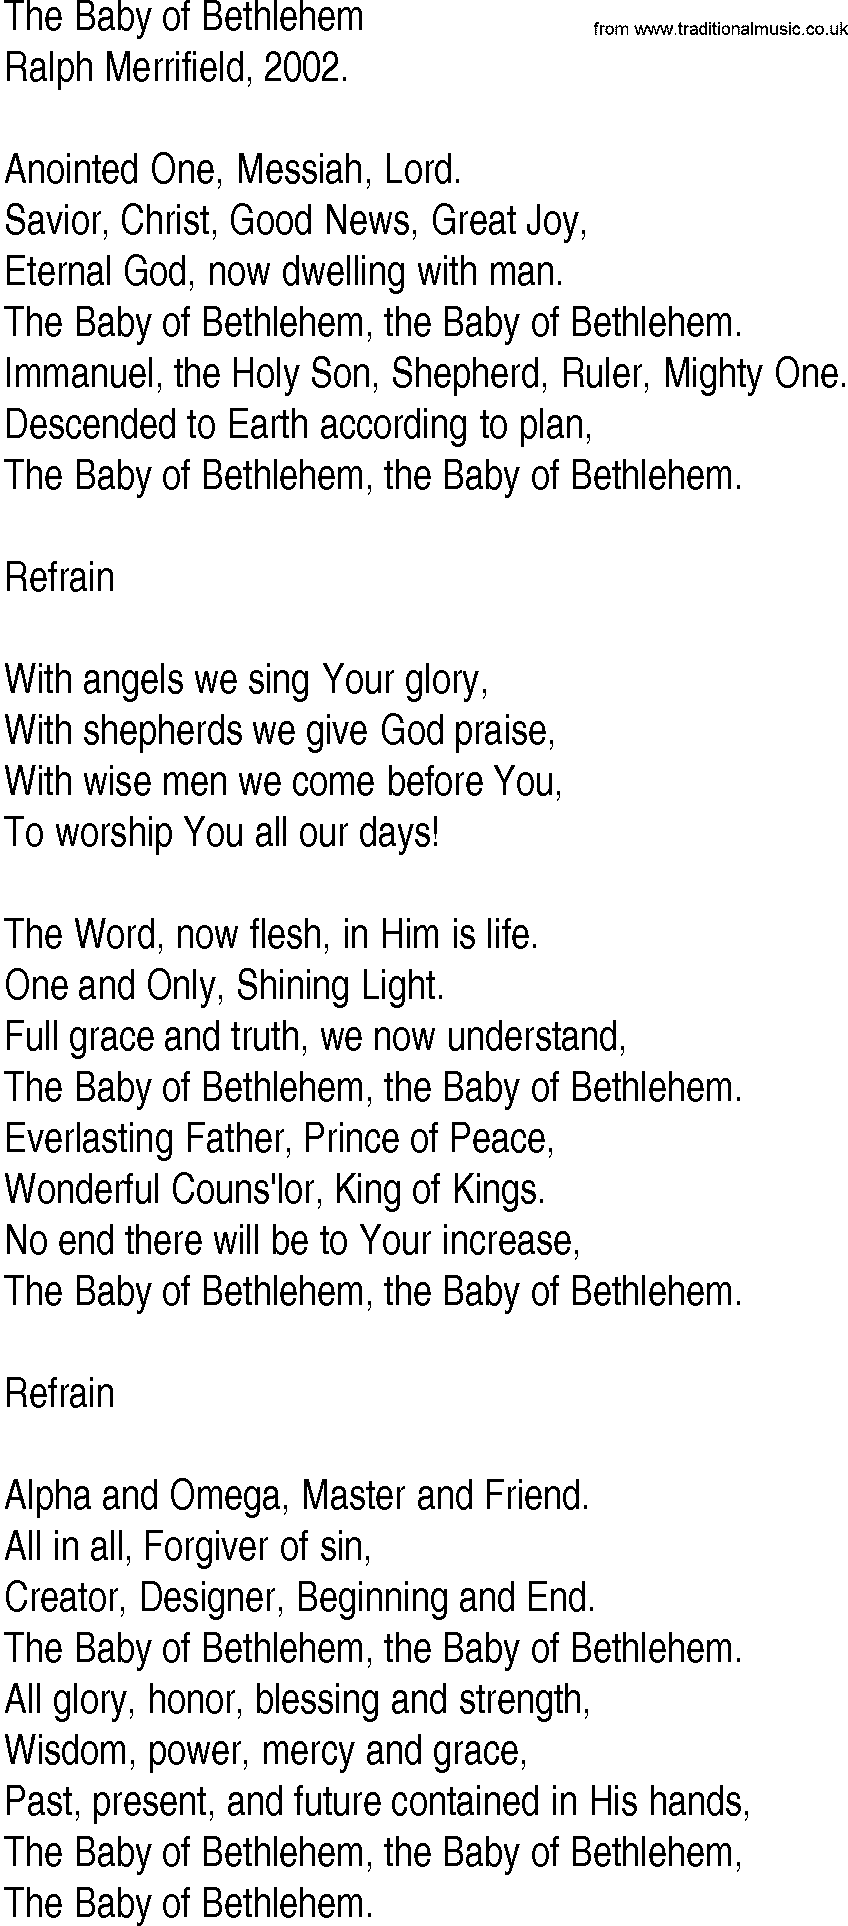 2002 lyrics